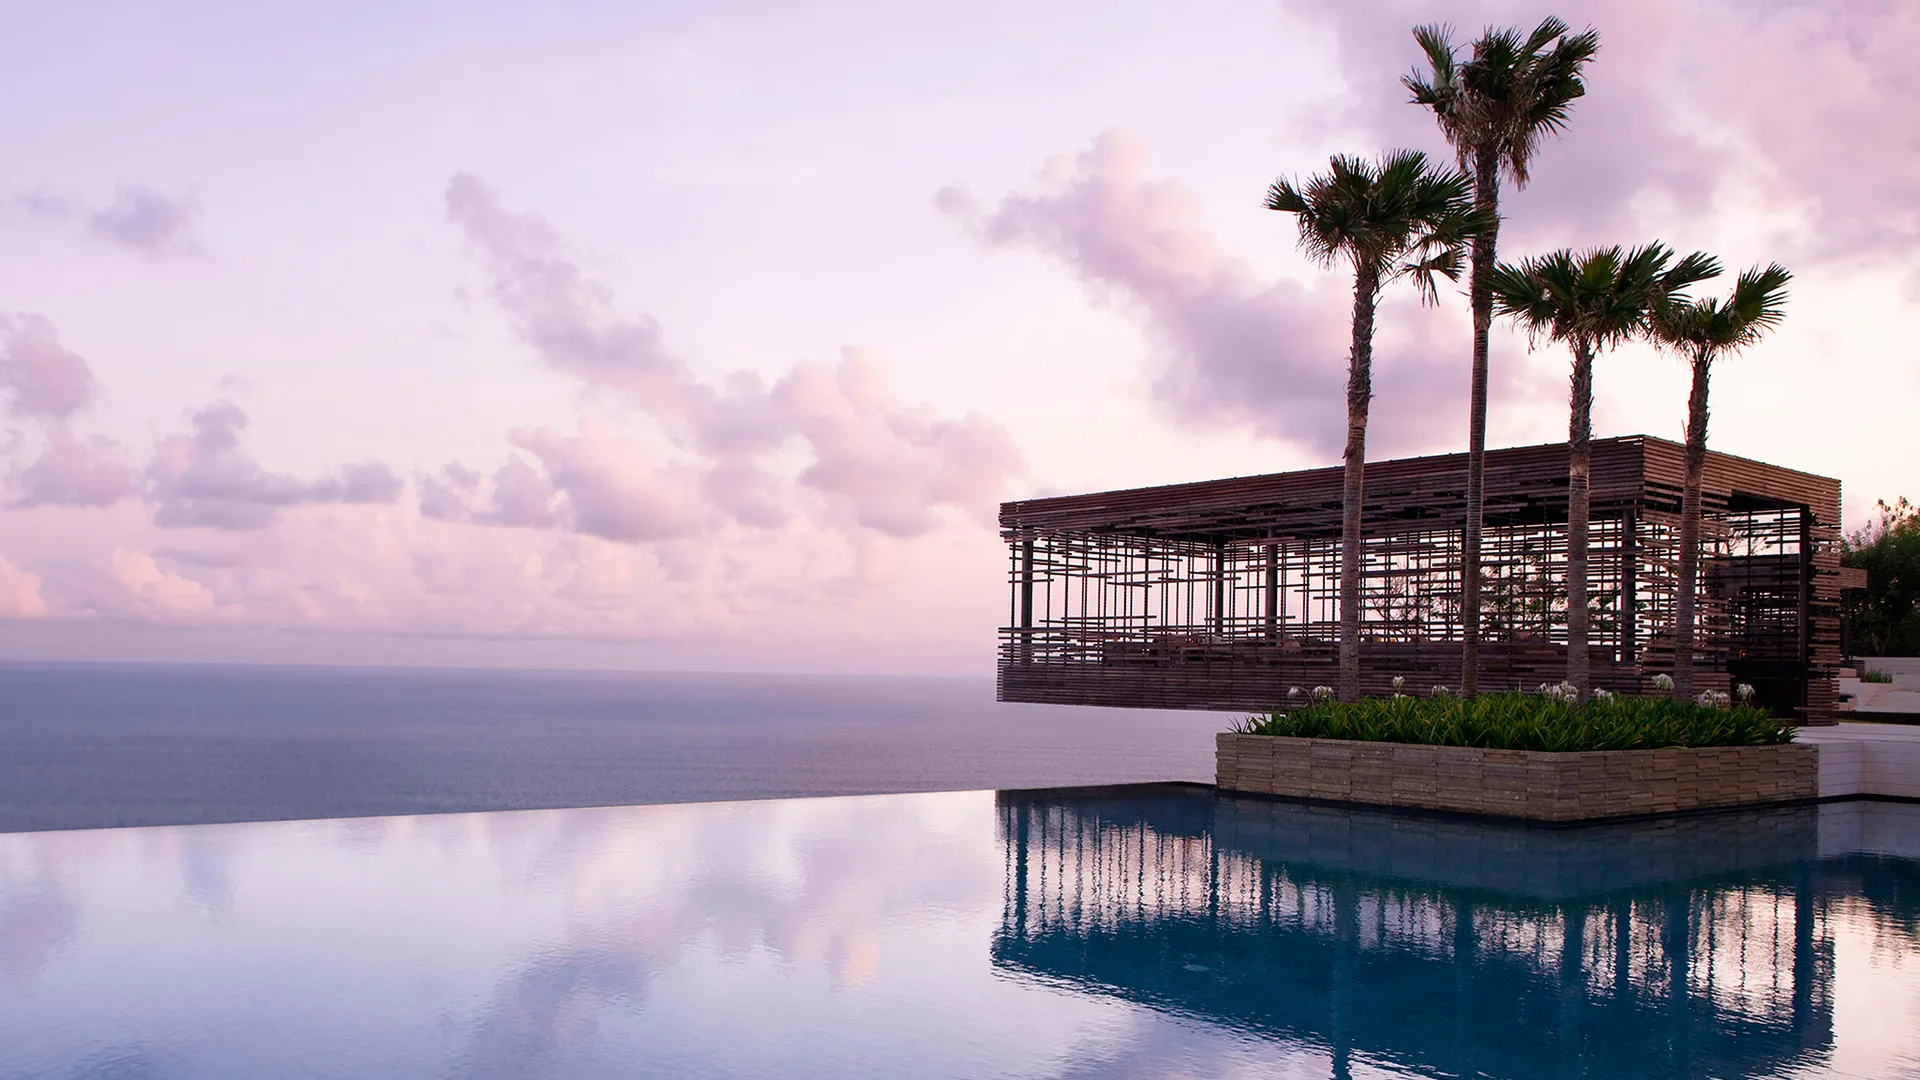 Conheça as melhores opções de hotéis em Bali Indonésia